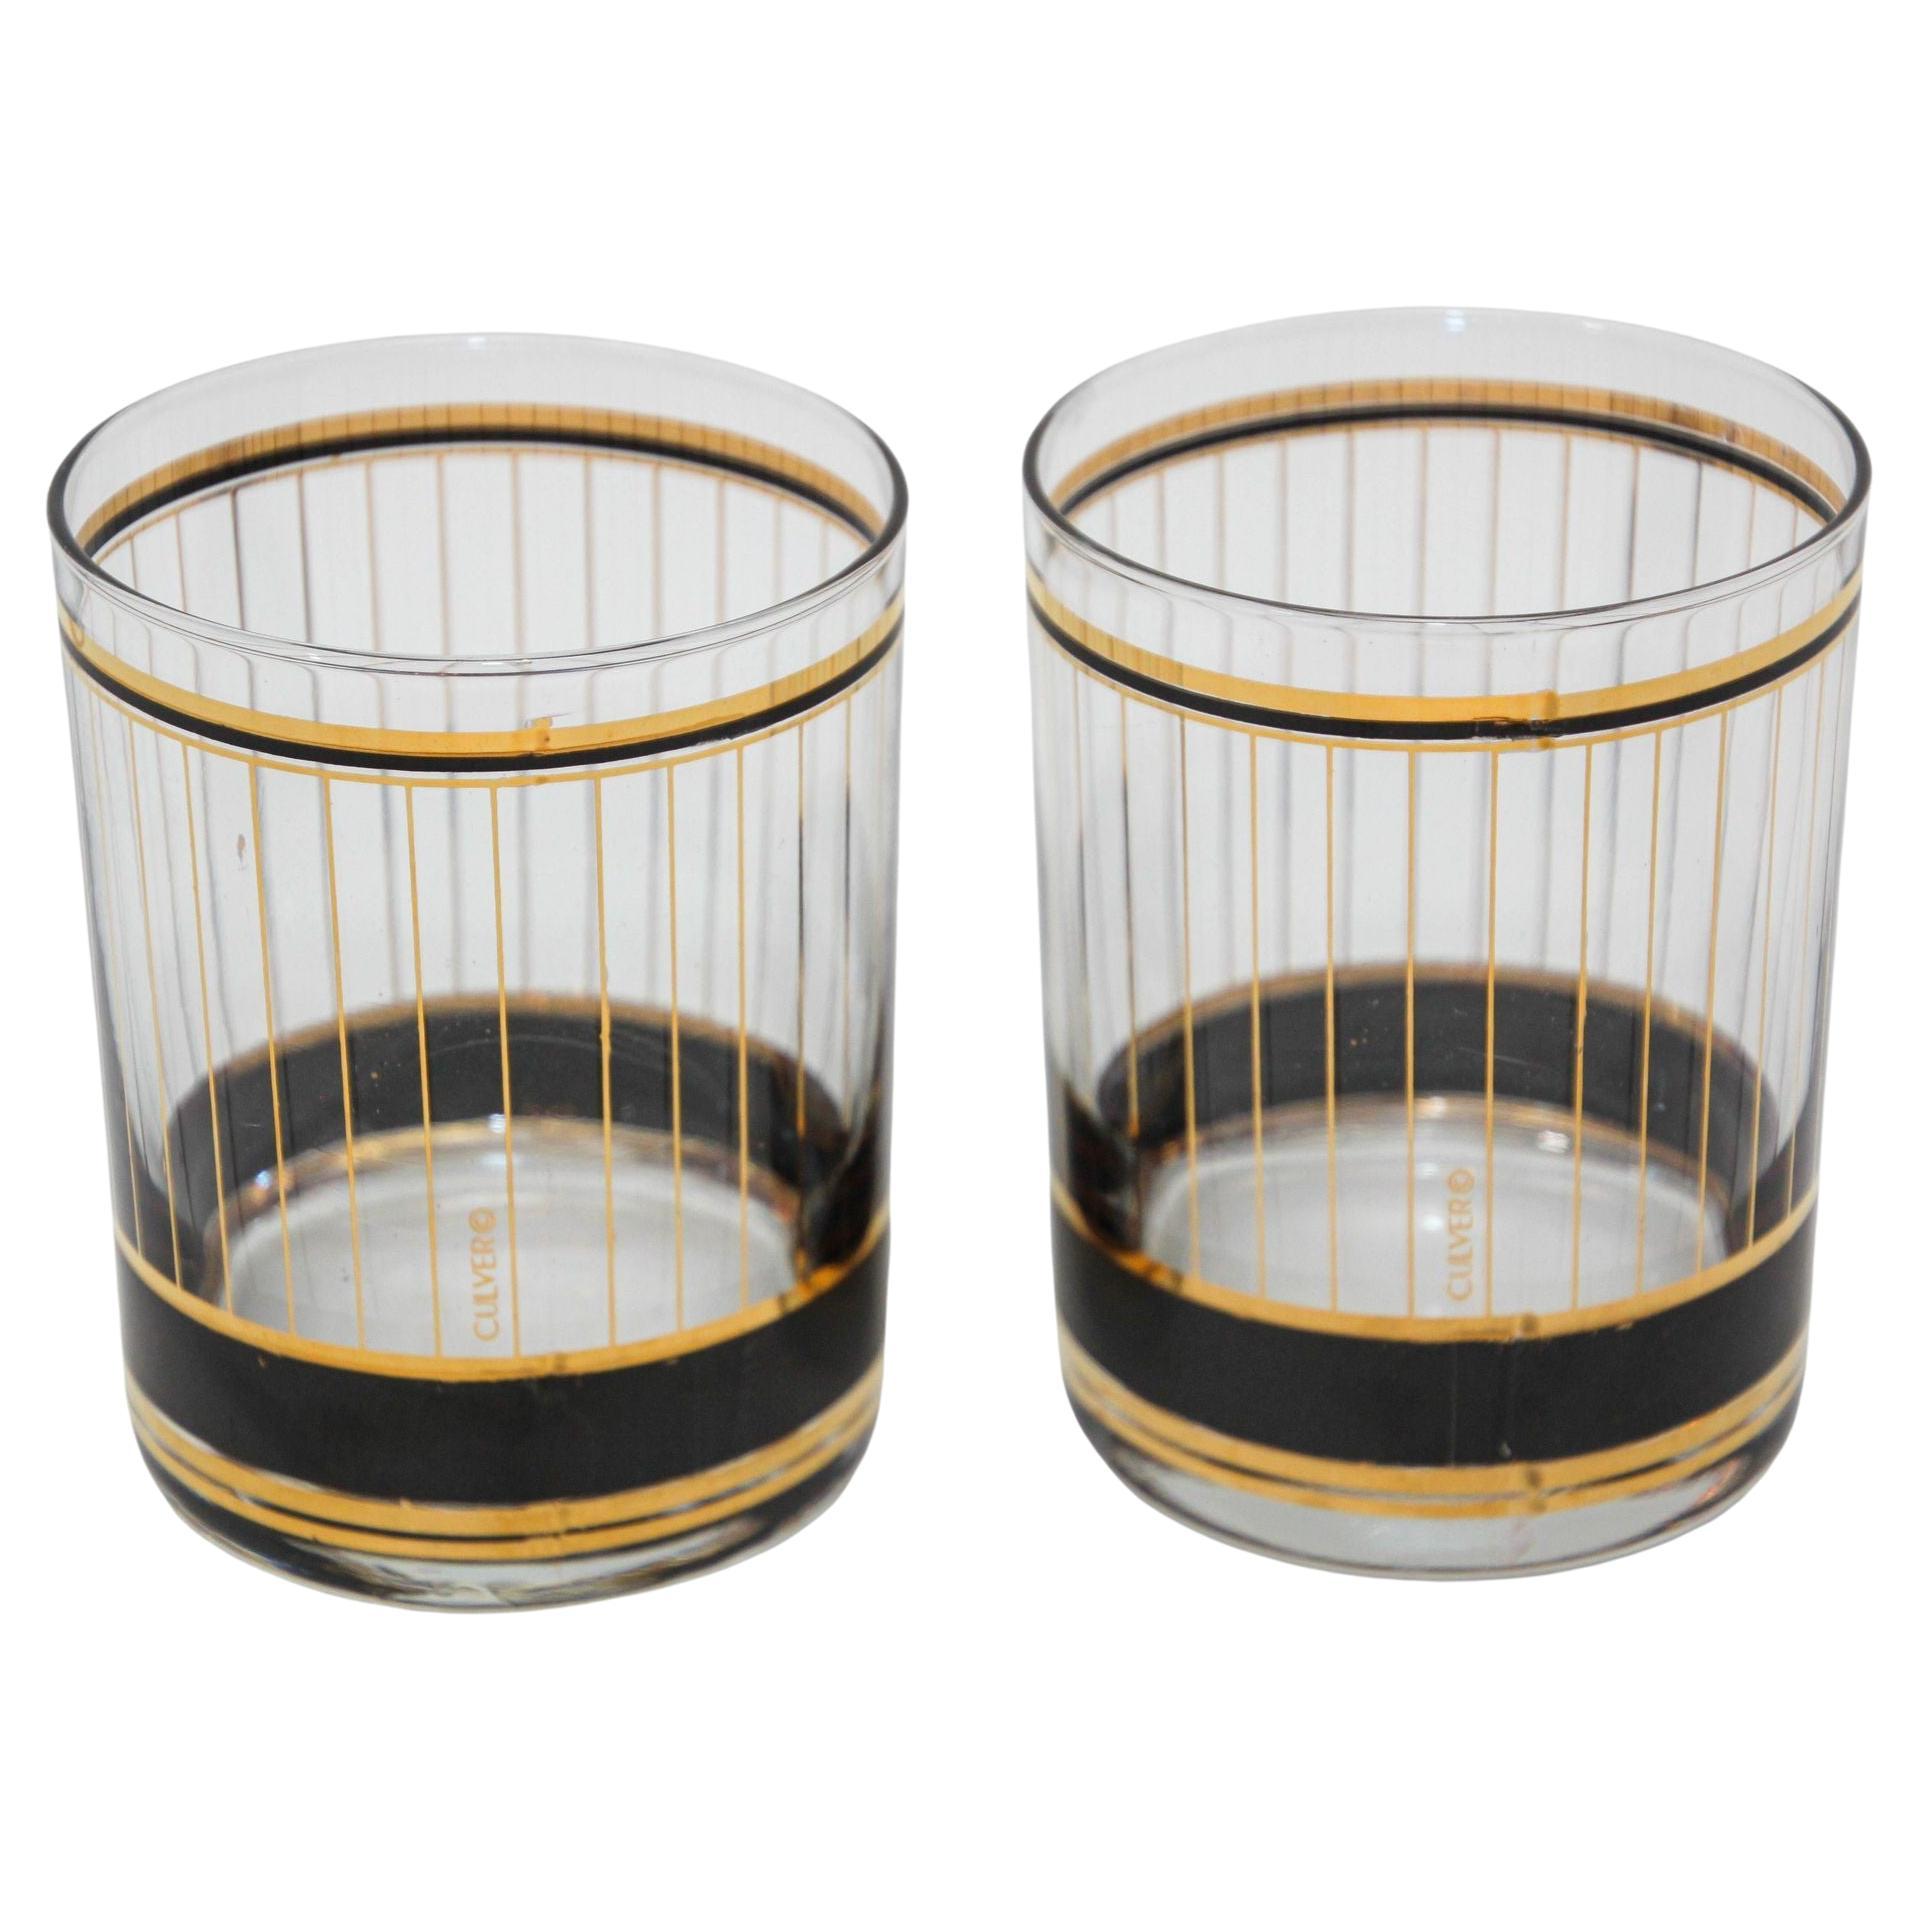 12 oz Matte Black and Gold Designer Cocktail Glasses, Double Old